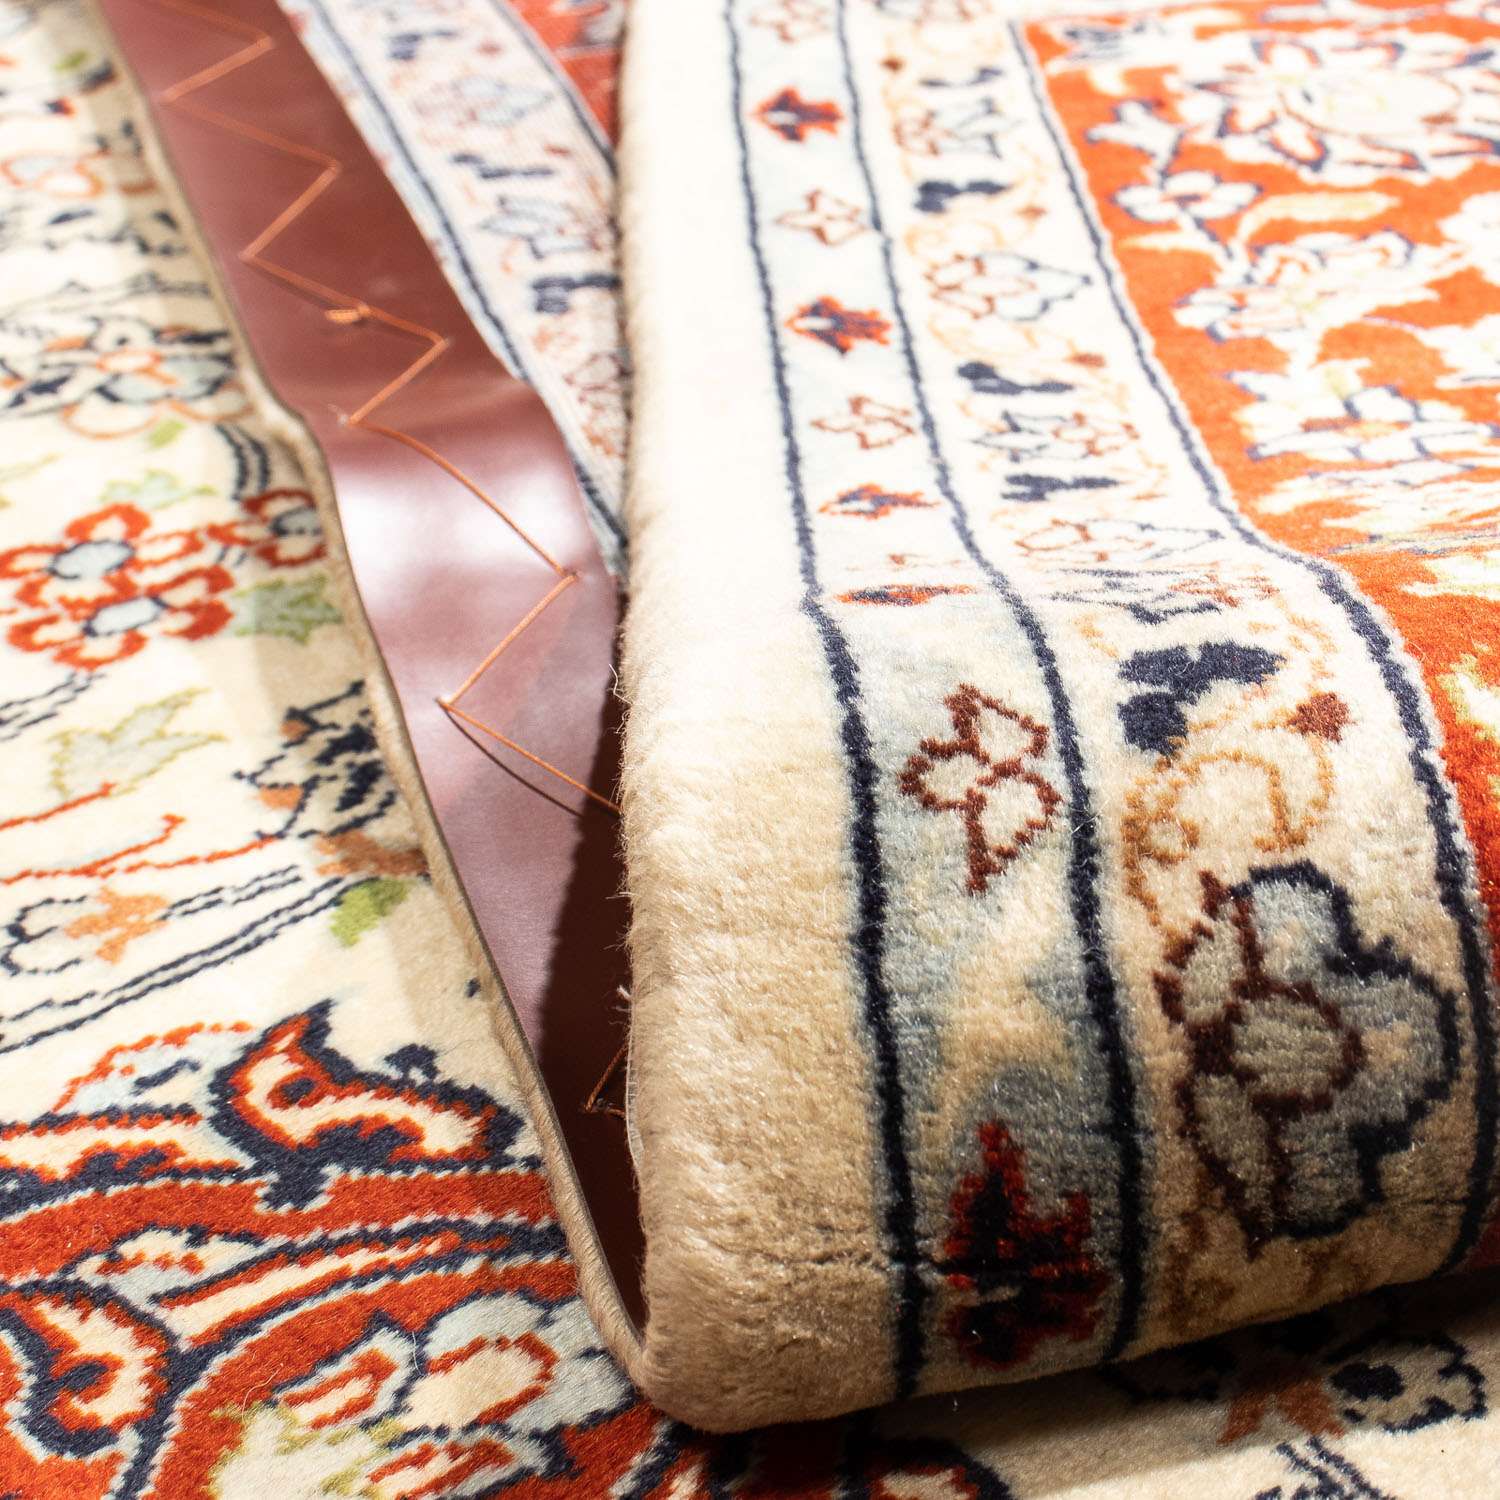 Perský koberec - Klasický - 316 x 205 cm - béžová